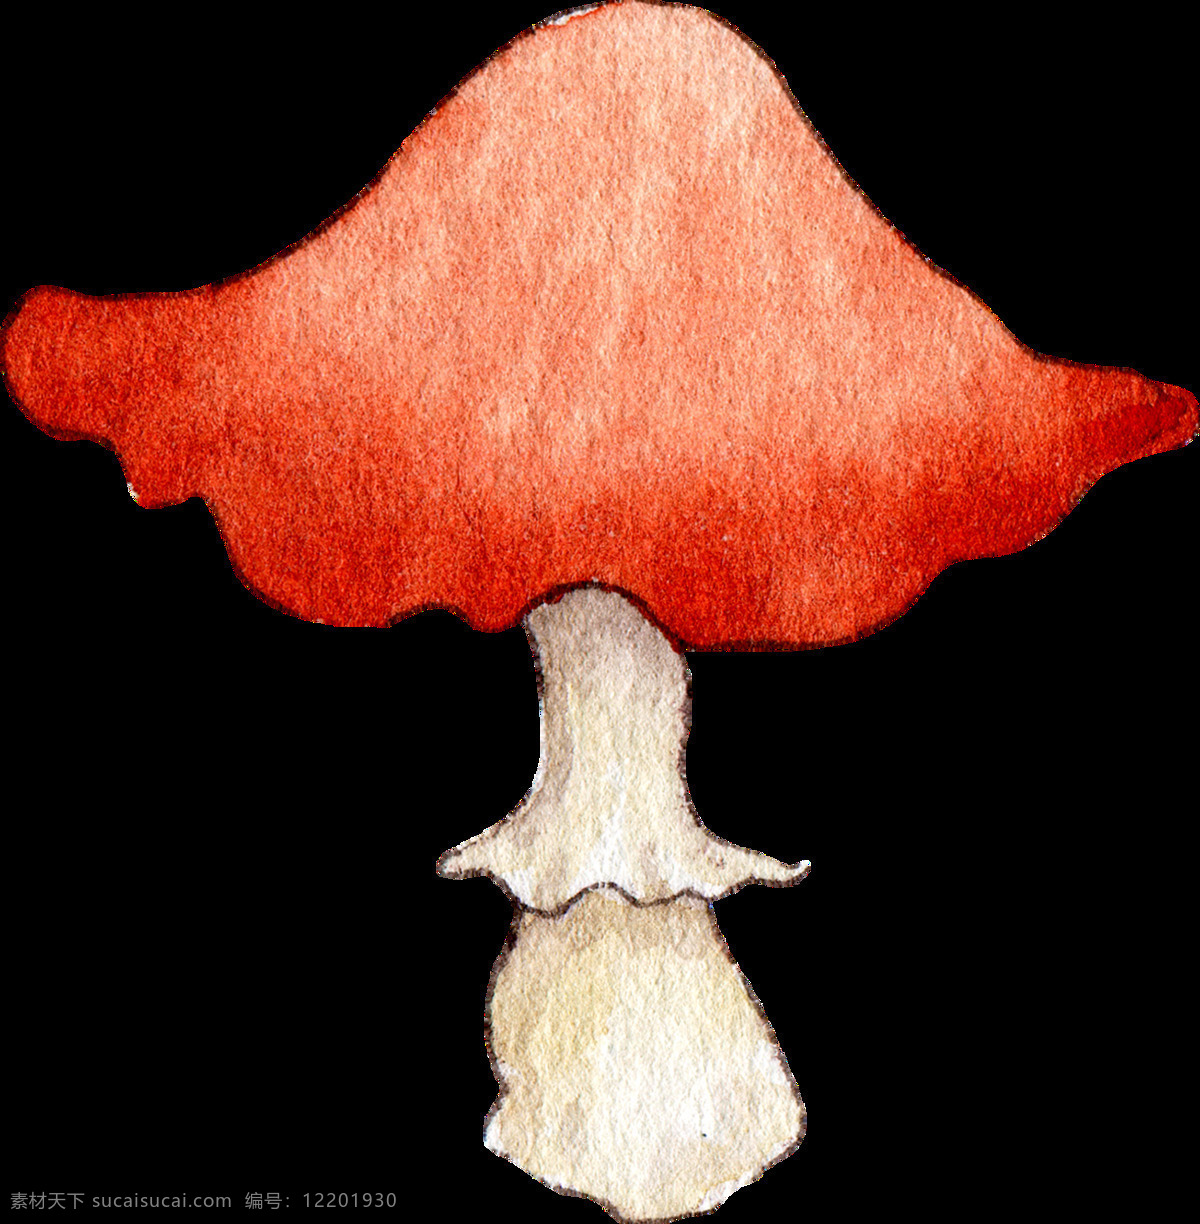 食用 蘑菇 透明 装饰 抠图专用 设计素材